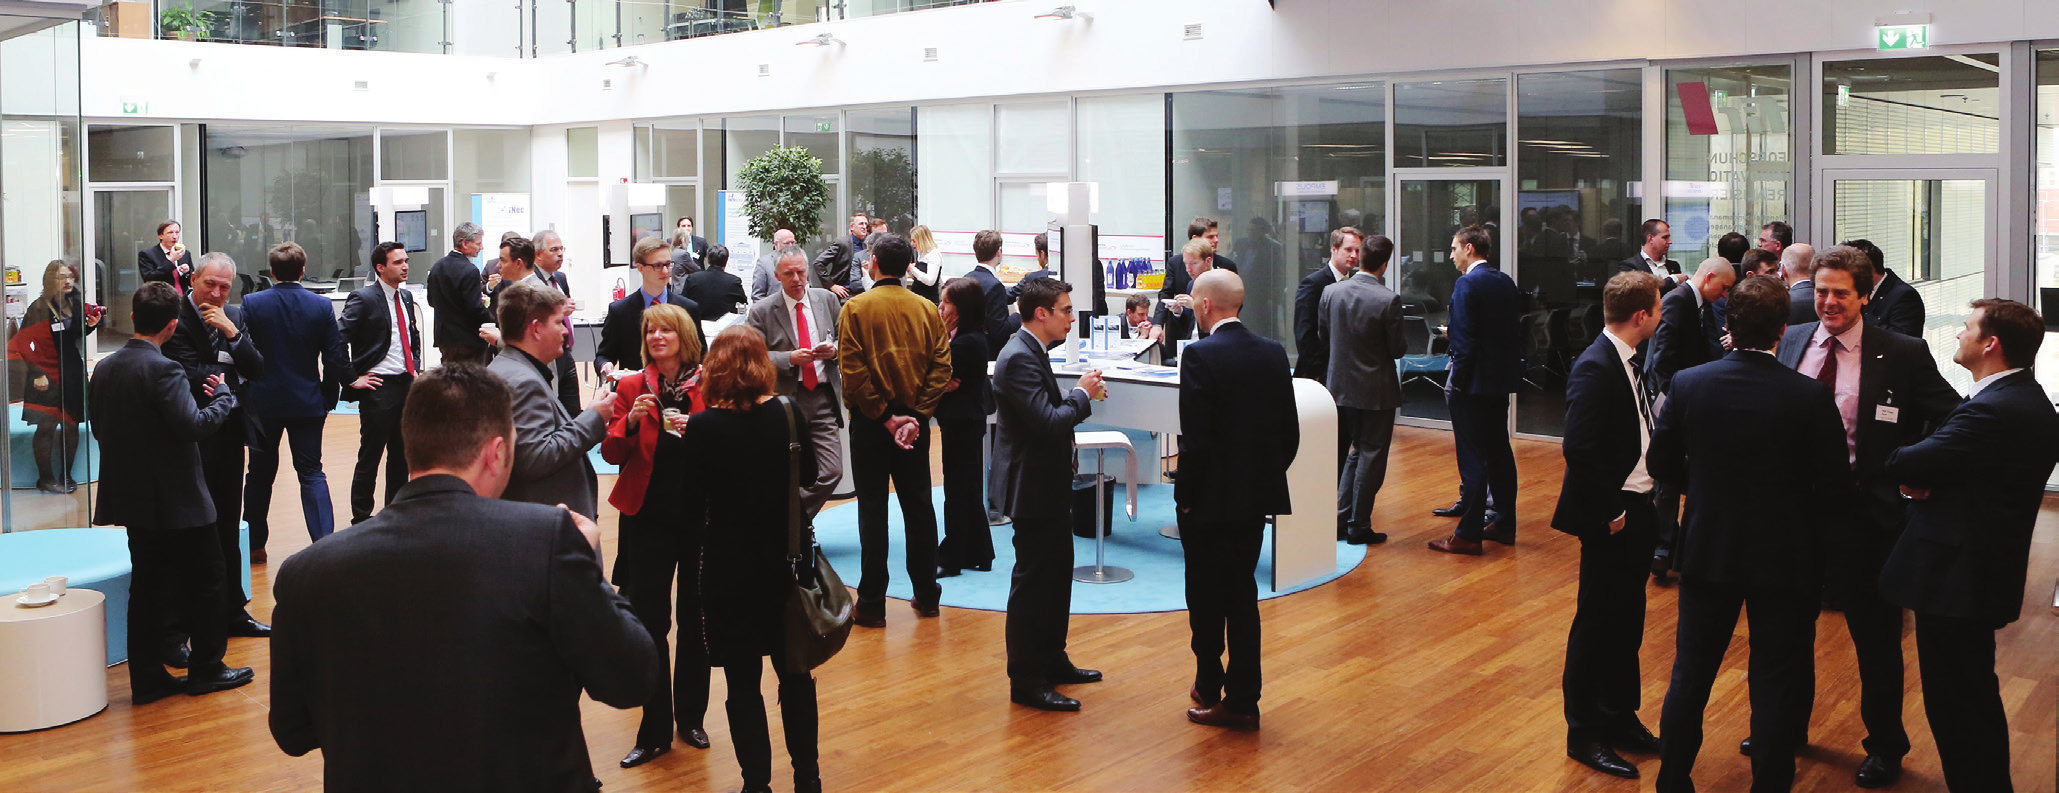 Die Veranstaltung auf einen Blick Das Aachener Dienstleistungsforum Das Aachener Dienstleistungsforum bietet eine ideale Austauschplattform für Führungskräfte und andere Experten aus Unternehmen